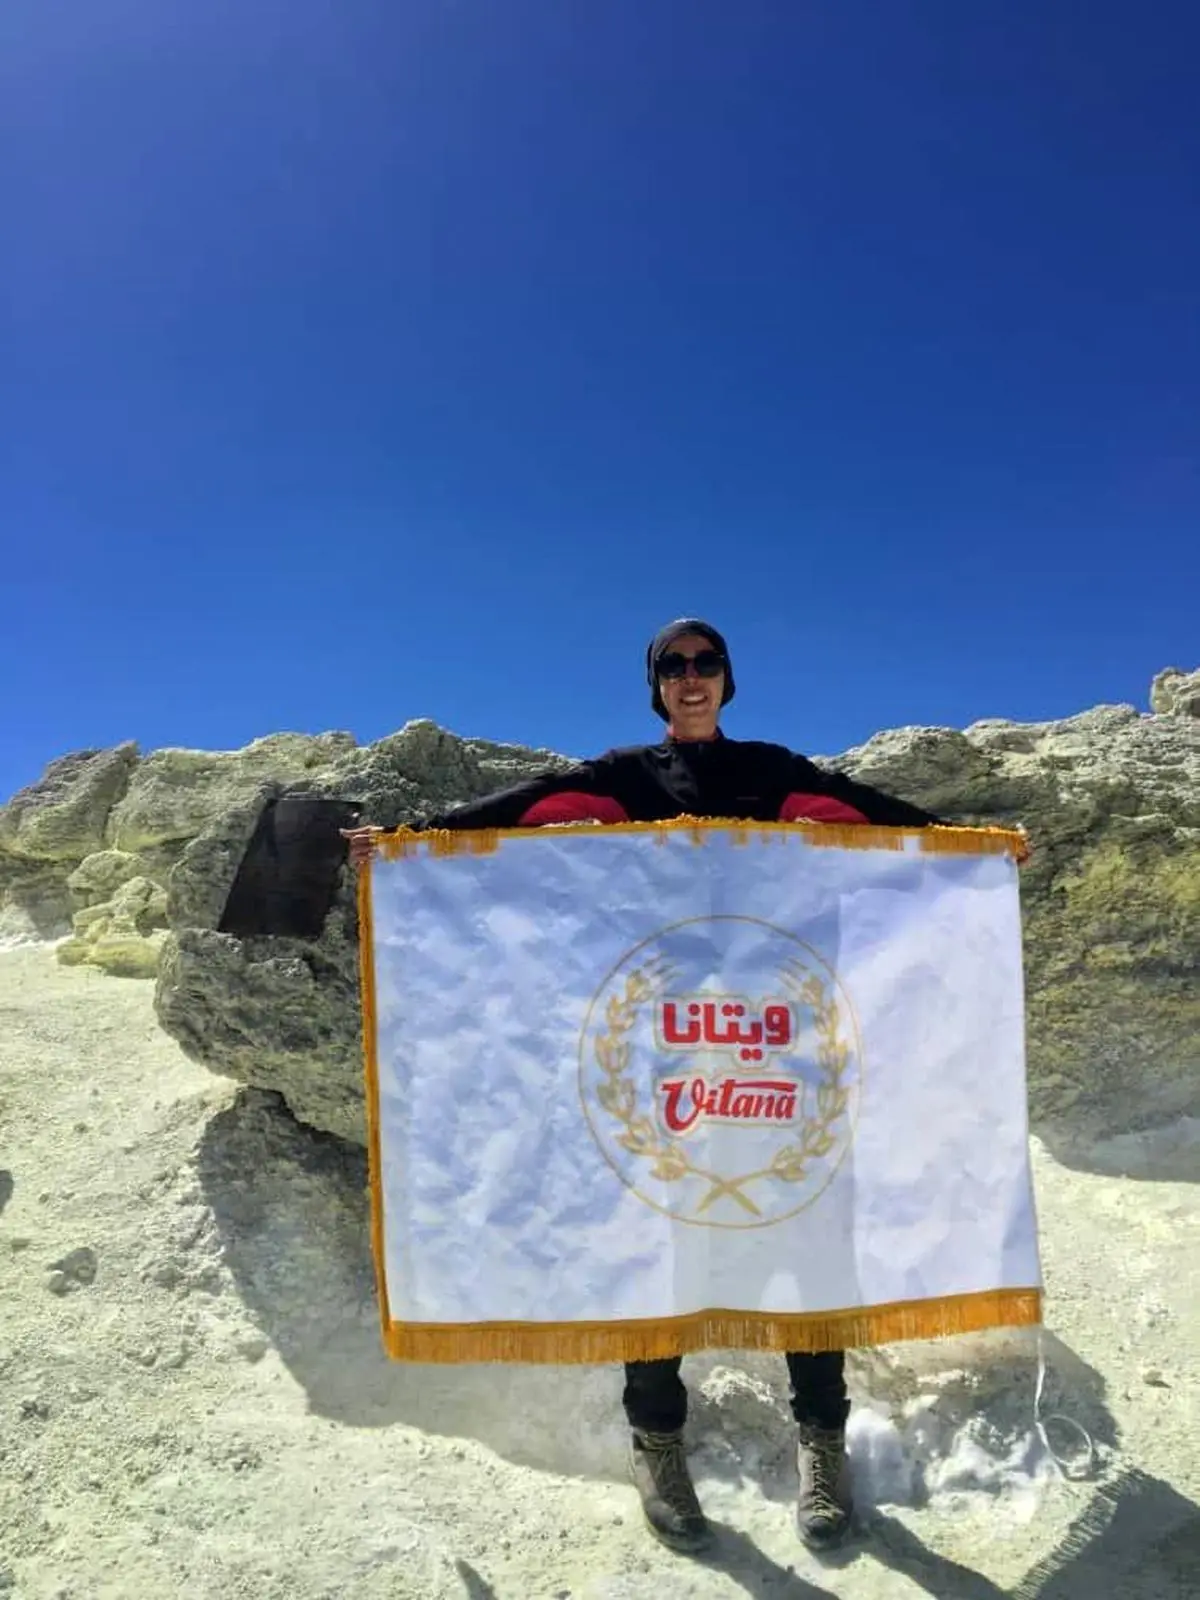 اهتزاز پرچم «ویتانا» بر قله دماوند توسط بانوی کوهنورد